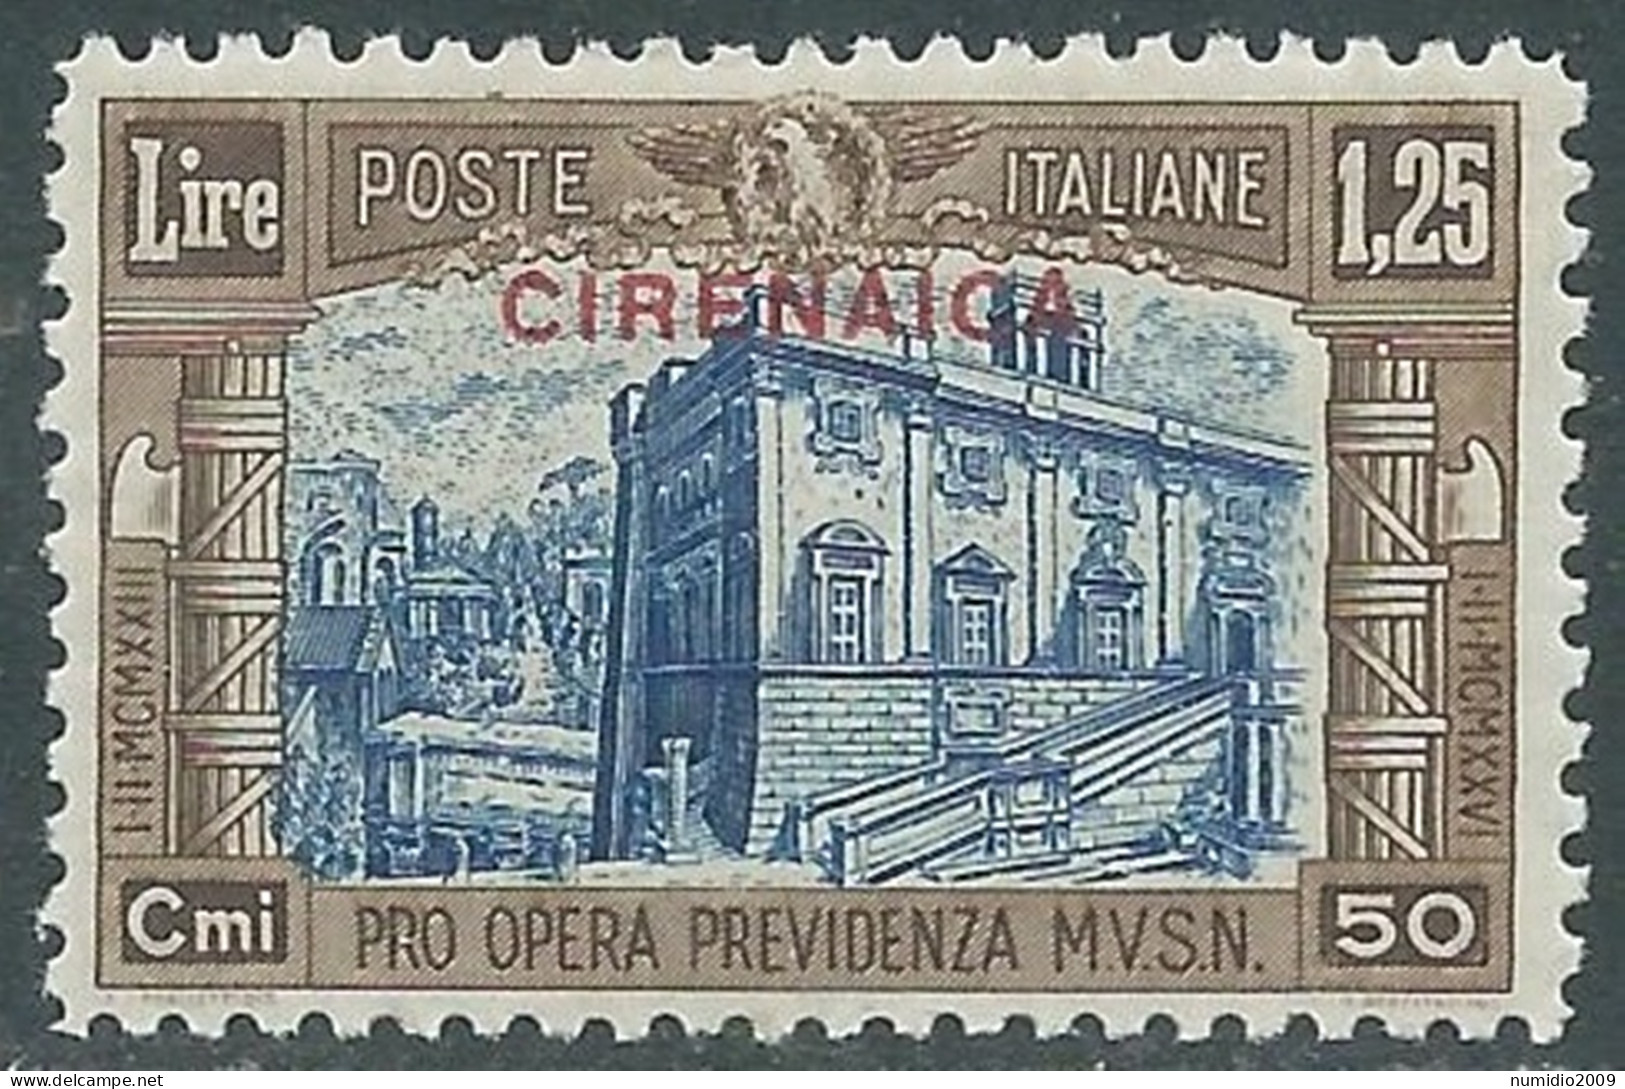 1929 CIRENAICA MILIZIA 1,25 LIRE MNH ** - RA21-7 - Cirenaica